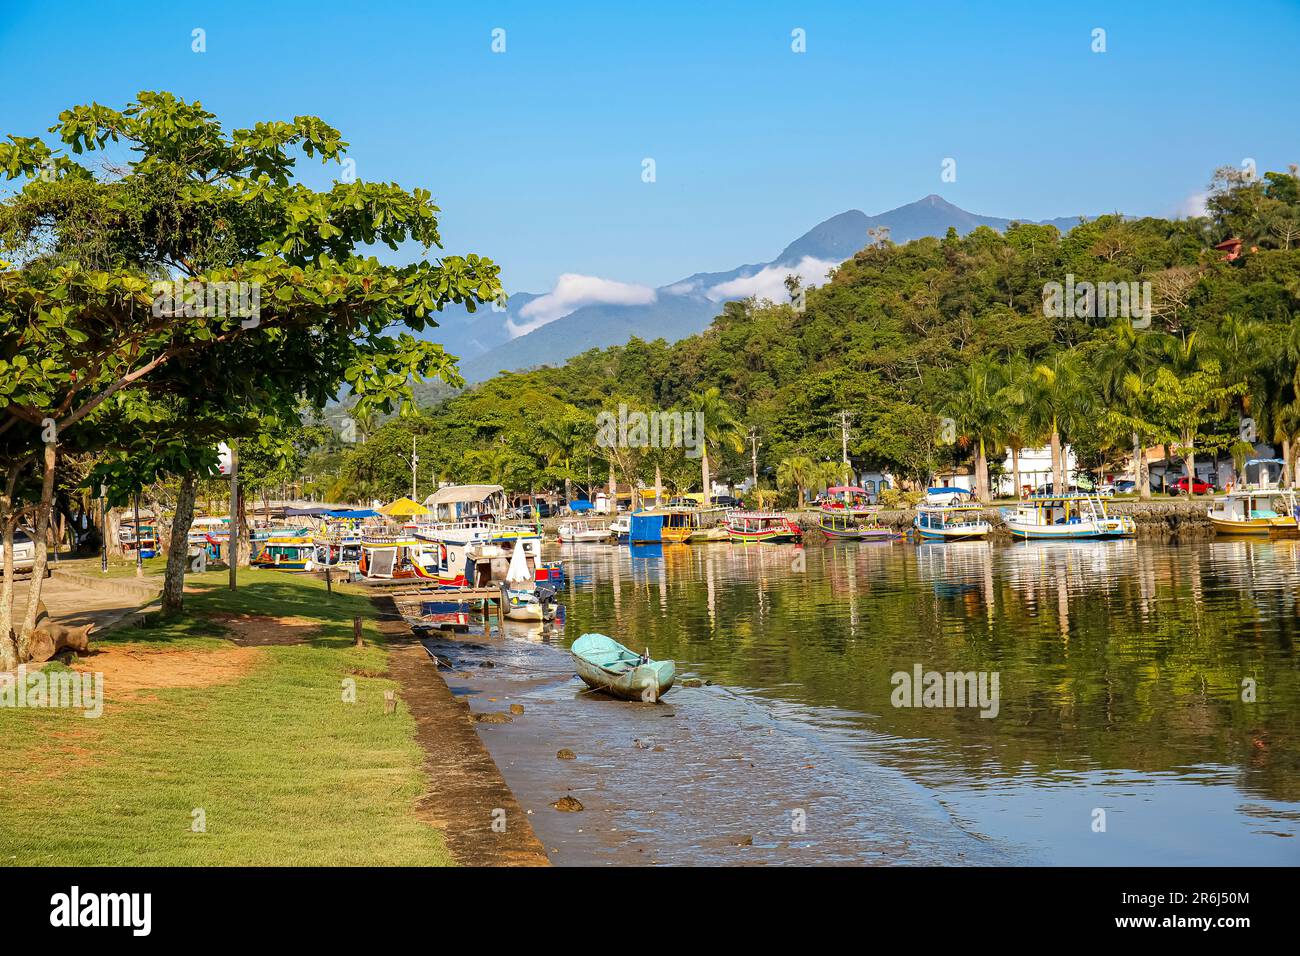 Idyllischer Blick auf den Fluss Perequê-Azu bei lowe Tide mit bunten Tourbooten, Bäumen und Regenwaldbergen an einem sonnigen Tag in der Stadt P, die zum UNESCO-Weltkulturerbe gehört Stockfoto